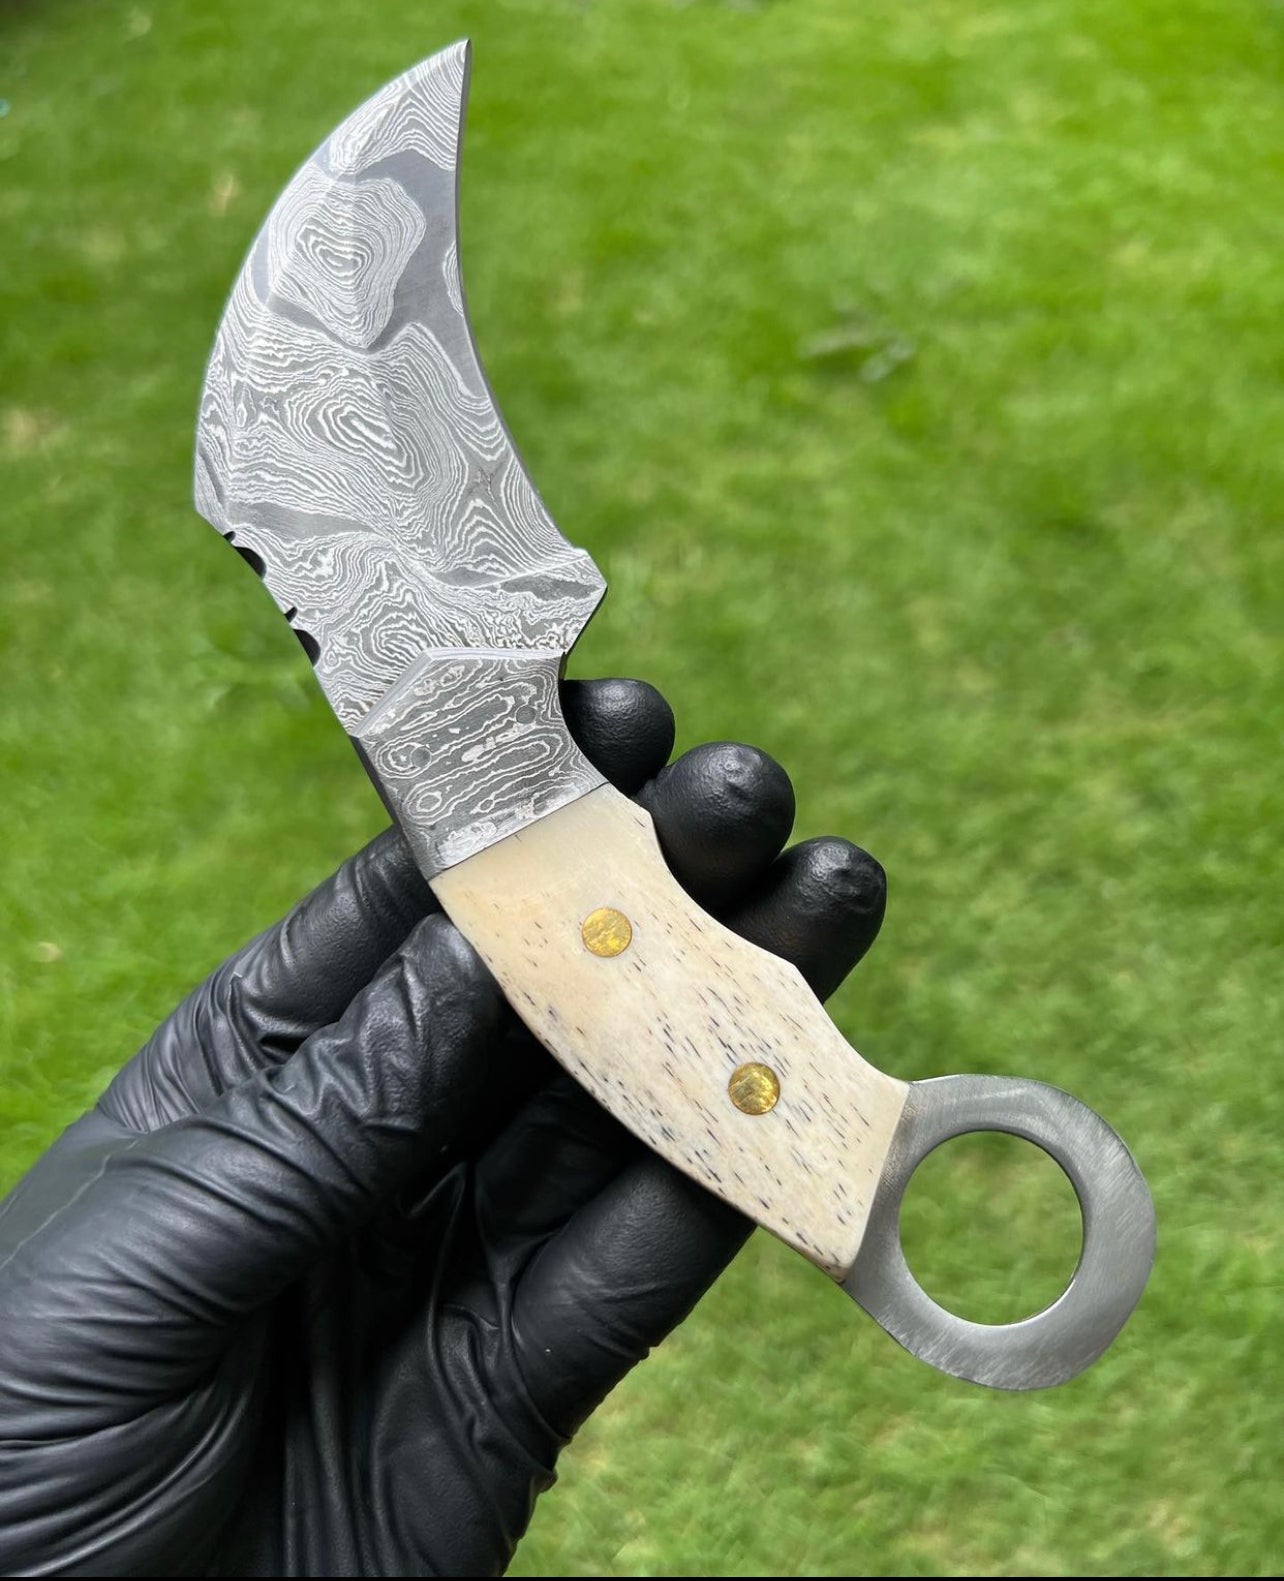 Handmade Damascus karambit knife